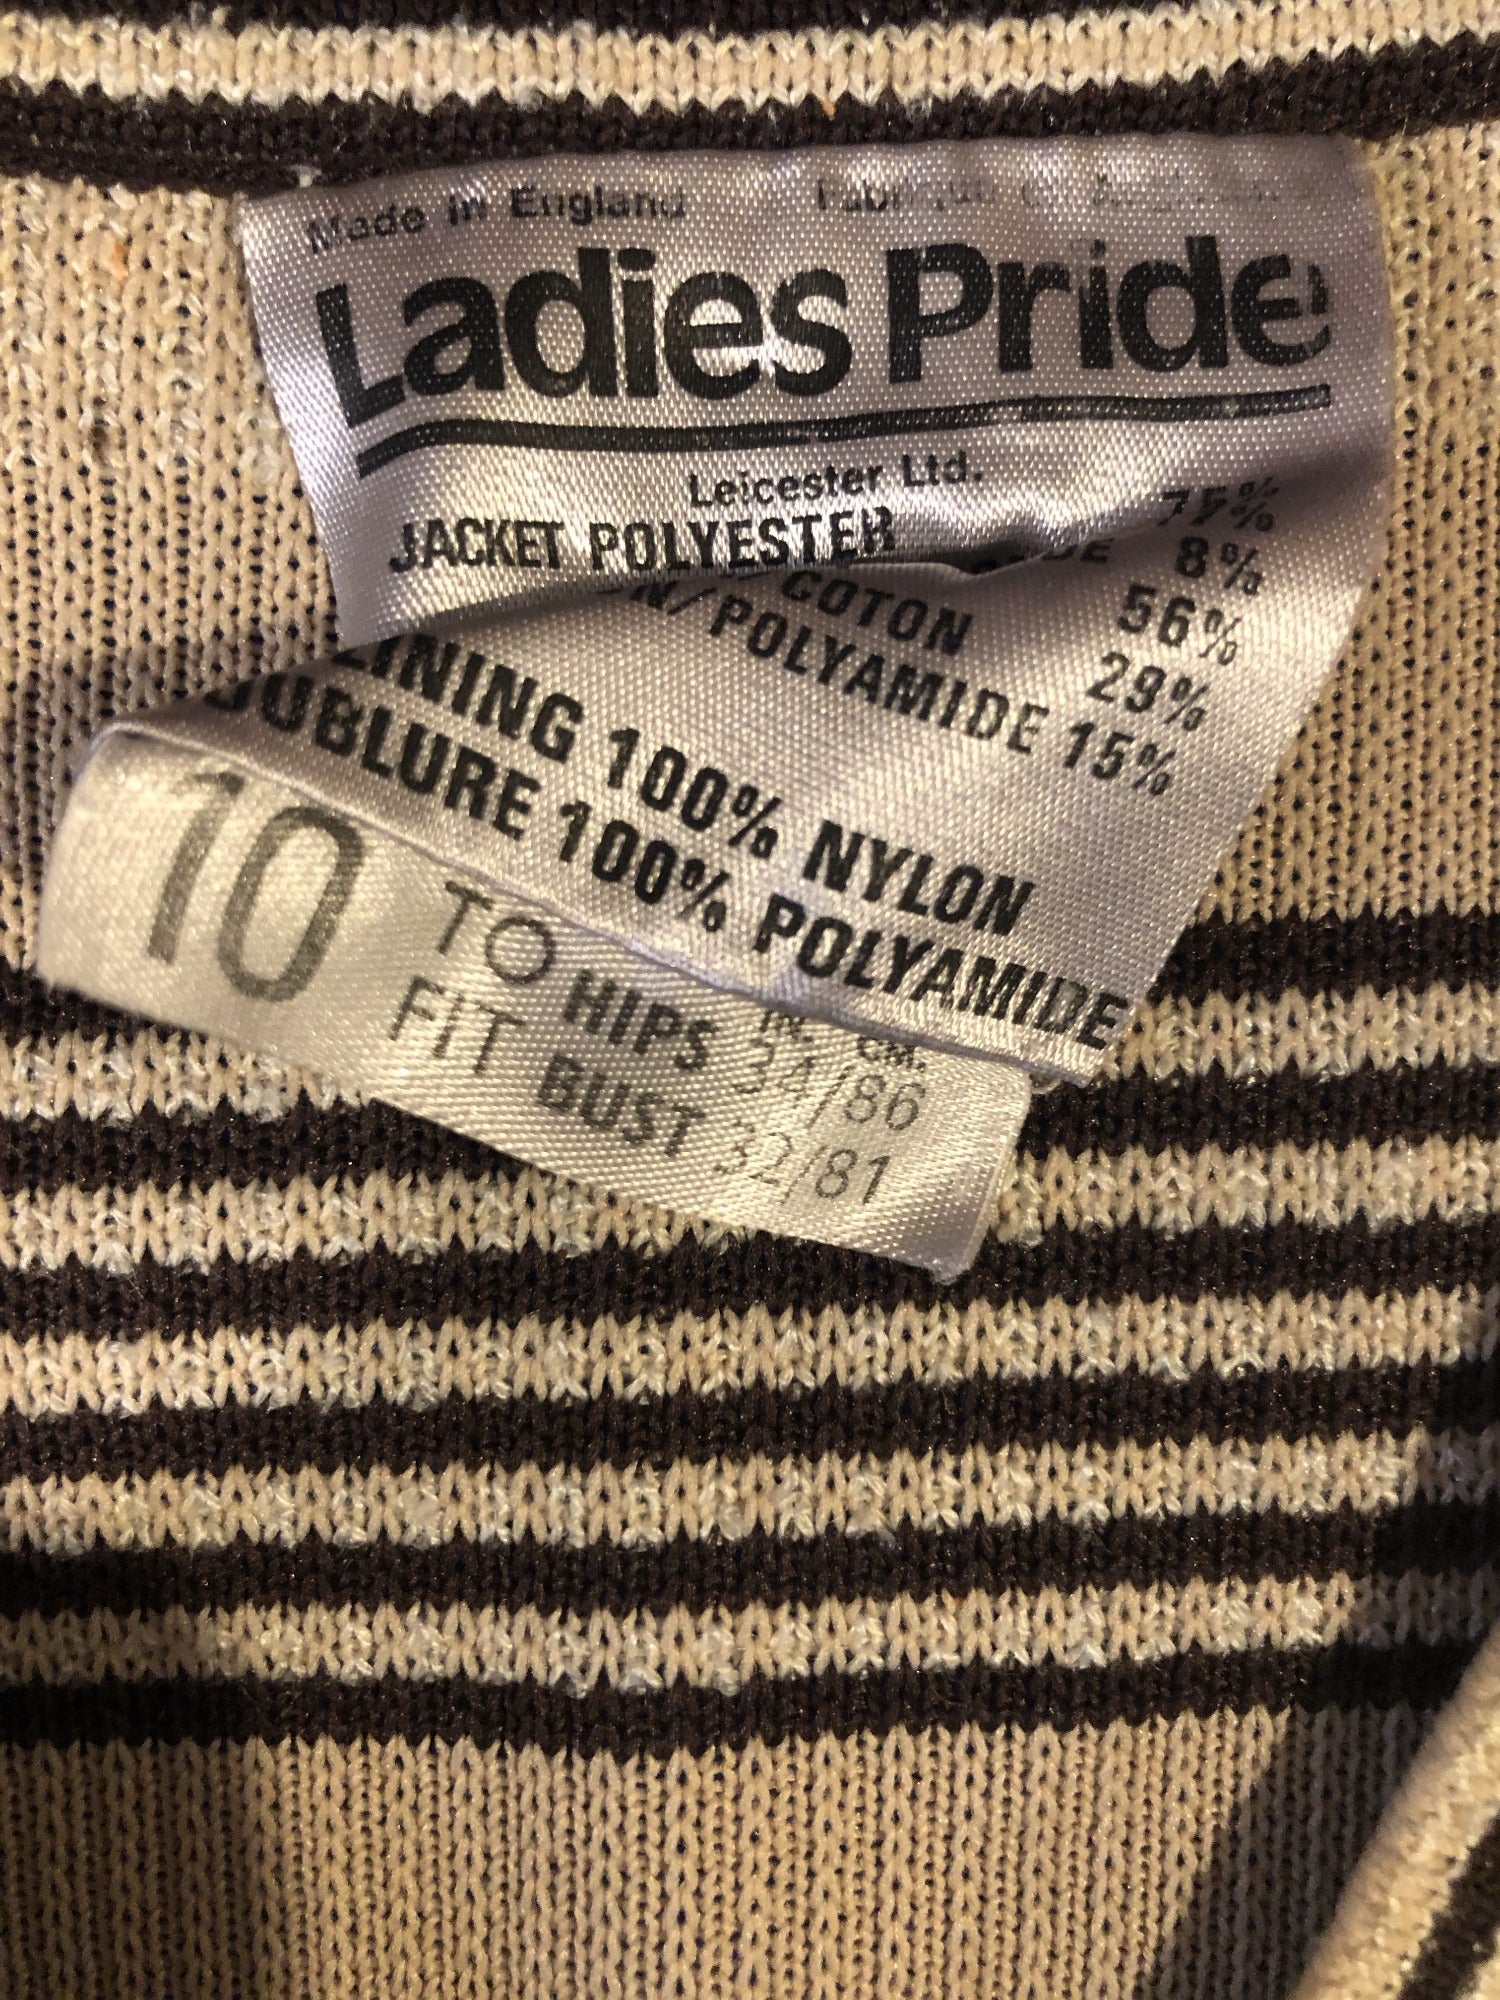 zip front  womens  waistcoat  vintage  Vest  tunic top  tunic  top  Tank Top  Stripes  light knitwear  Ladies Pride  knitwear  knitted  Kintwear  hippy  brown  boho  bohemian  70s  1970s  10